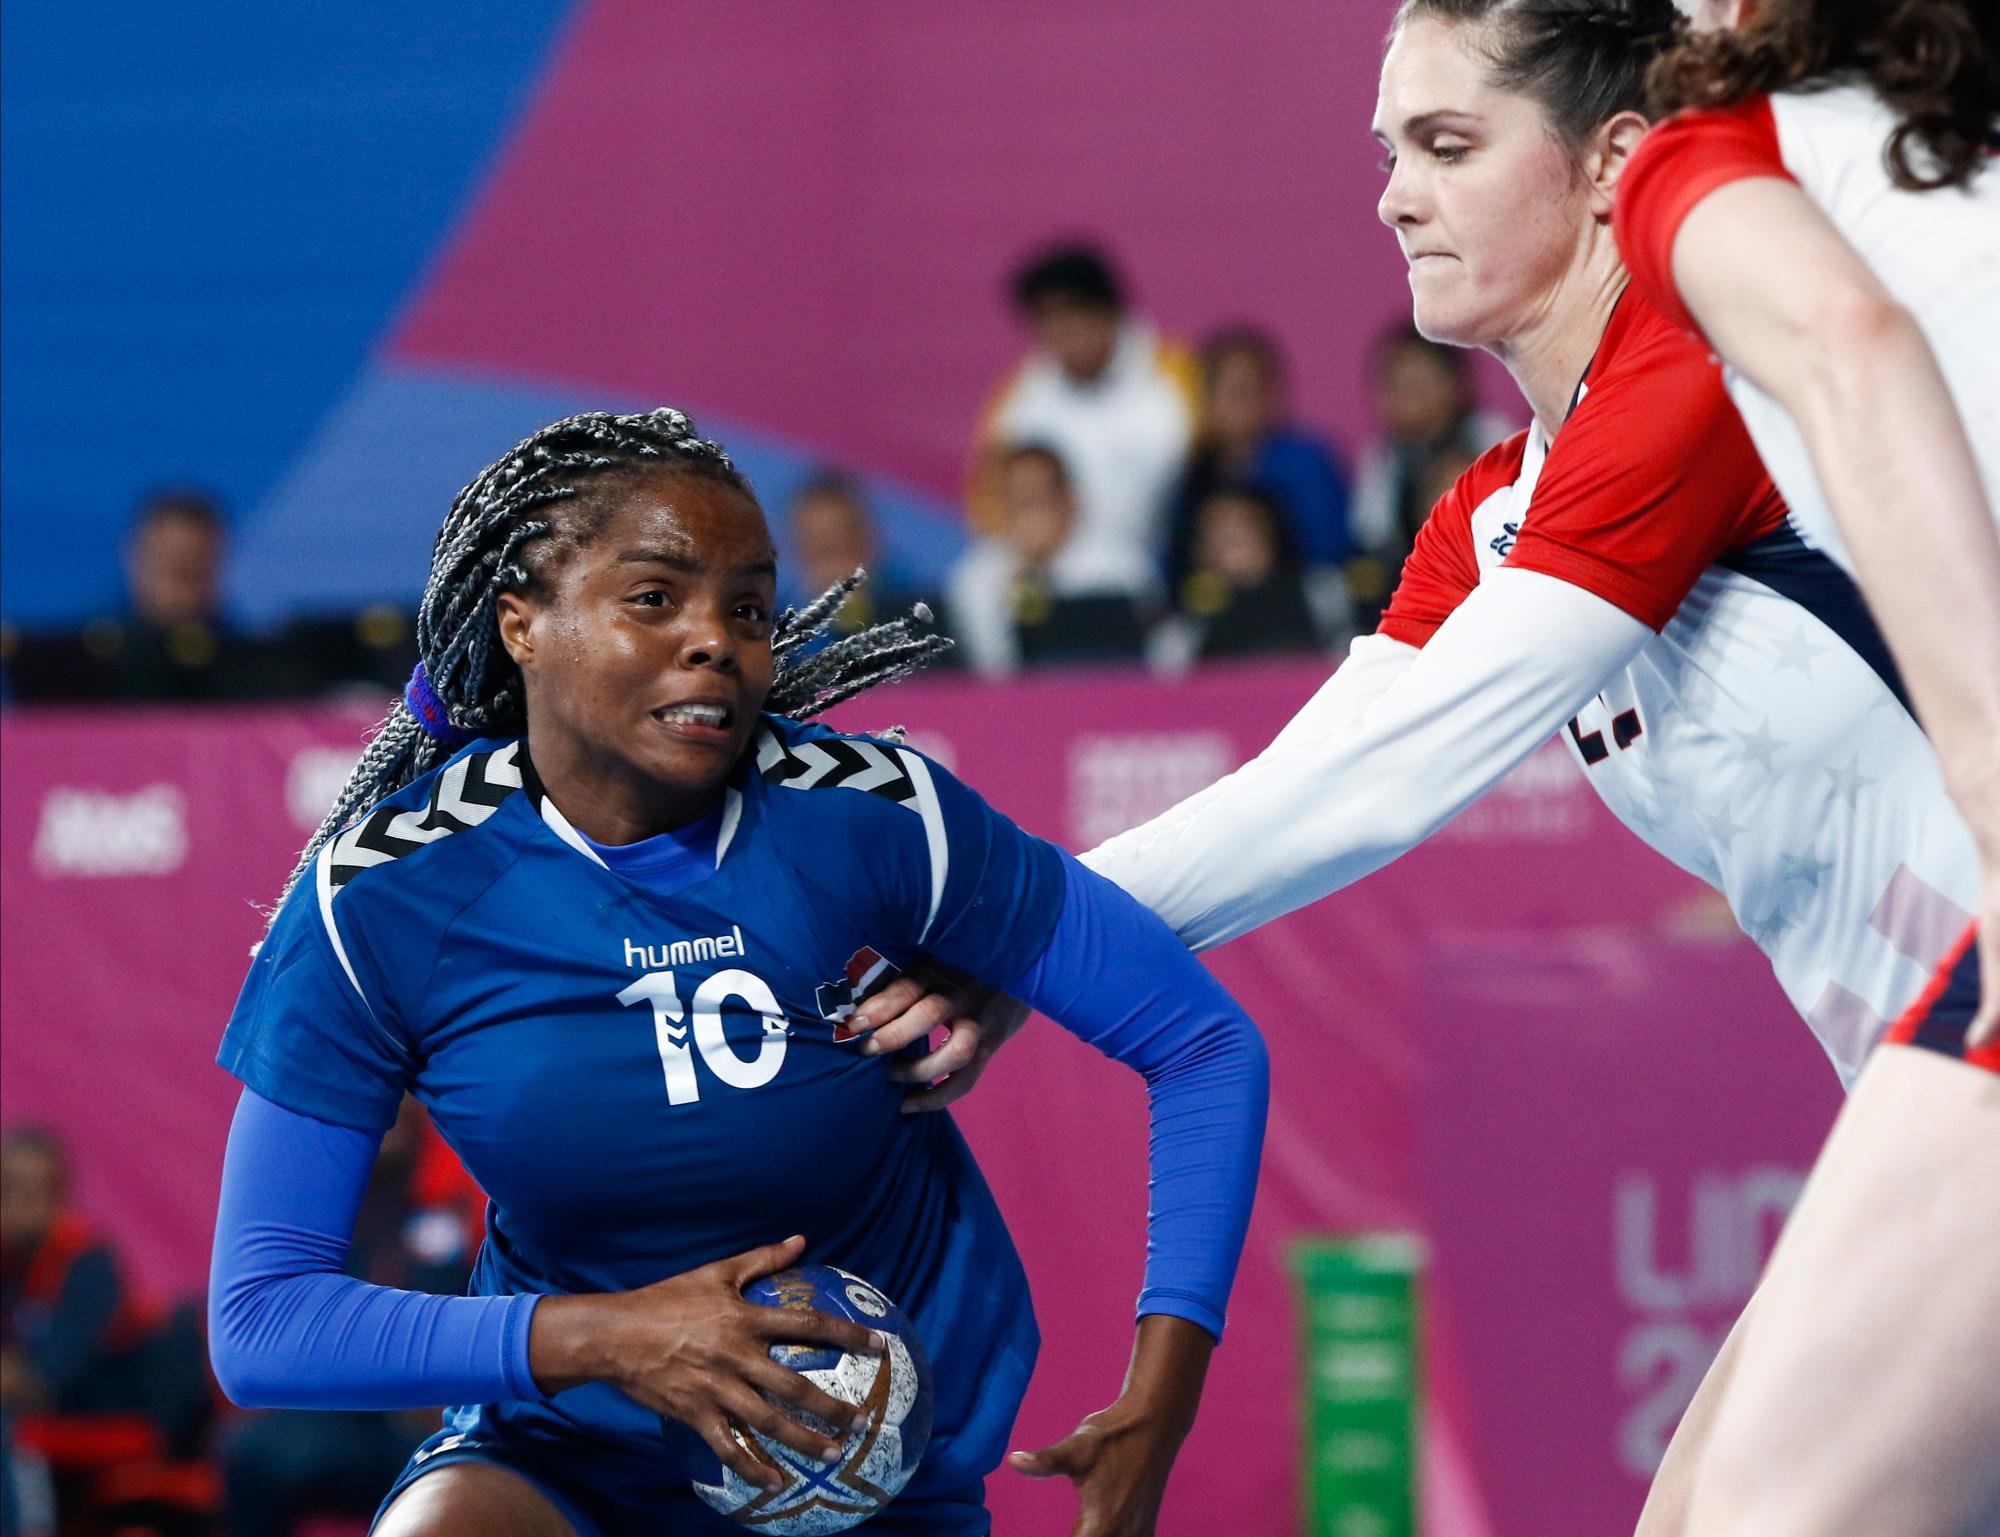 República Dominicana Carina Lorenzo (l) lucha con Jence Rhoades de Estados Unidos durante un partido de Balonmano en Villa Deportiva Nacional - VIDENA. Juegos Panamericanos Lima 2019. 